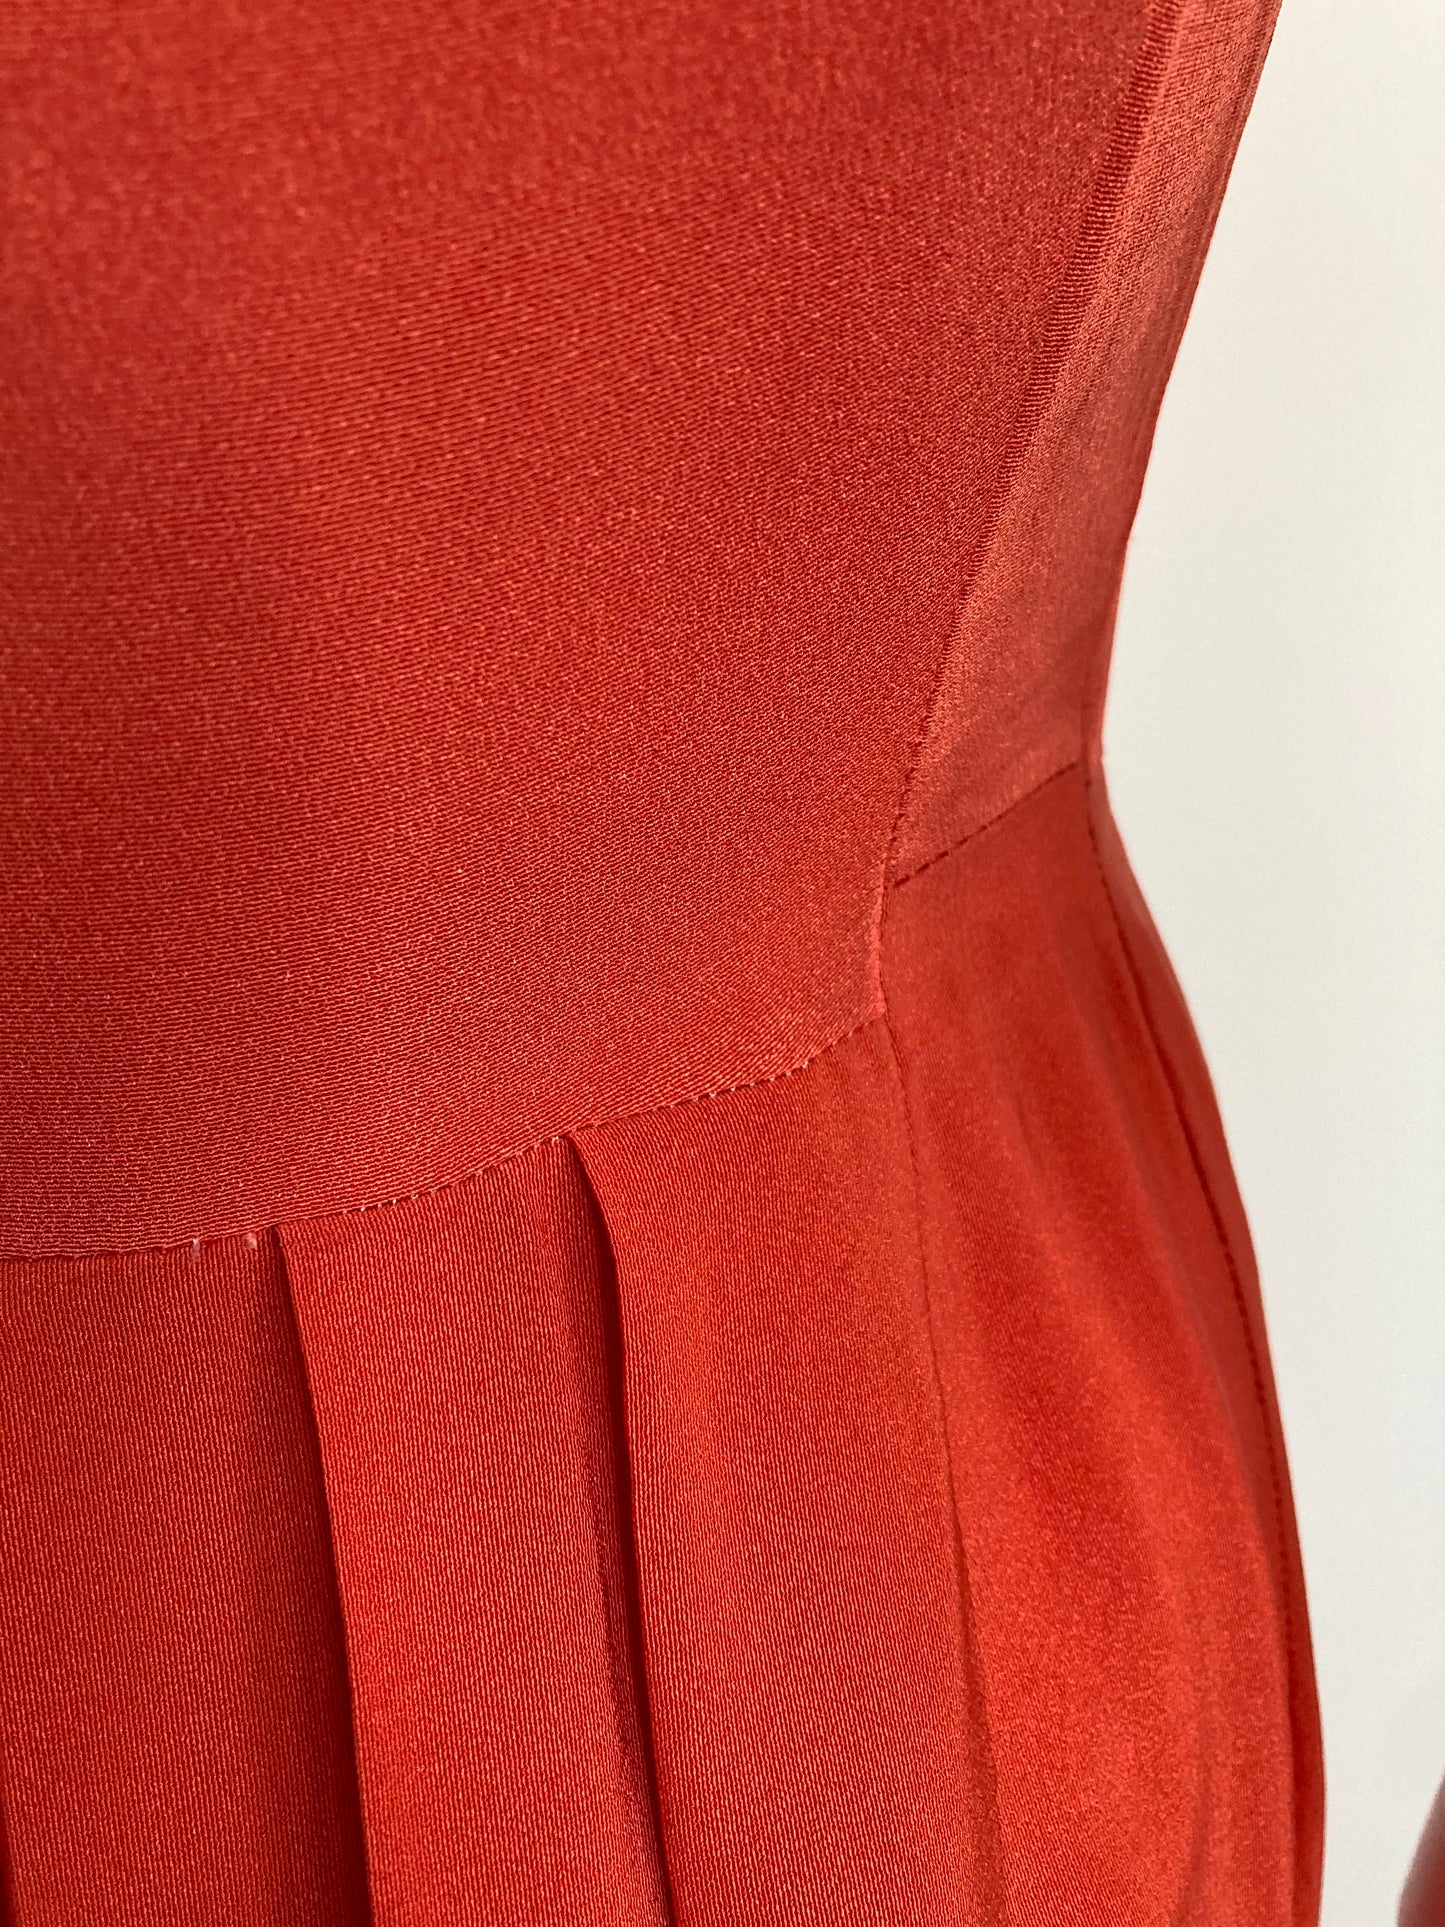 1940s Rayon Day Dress, Size Small, Orange Rayon 40s Dress